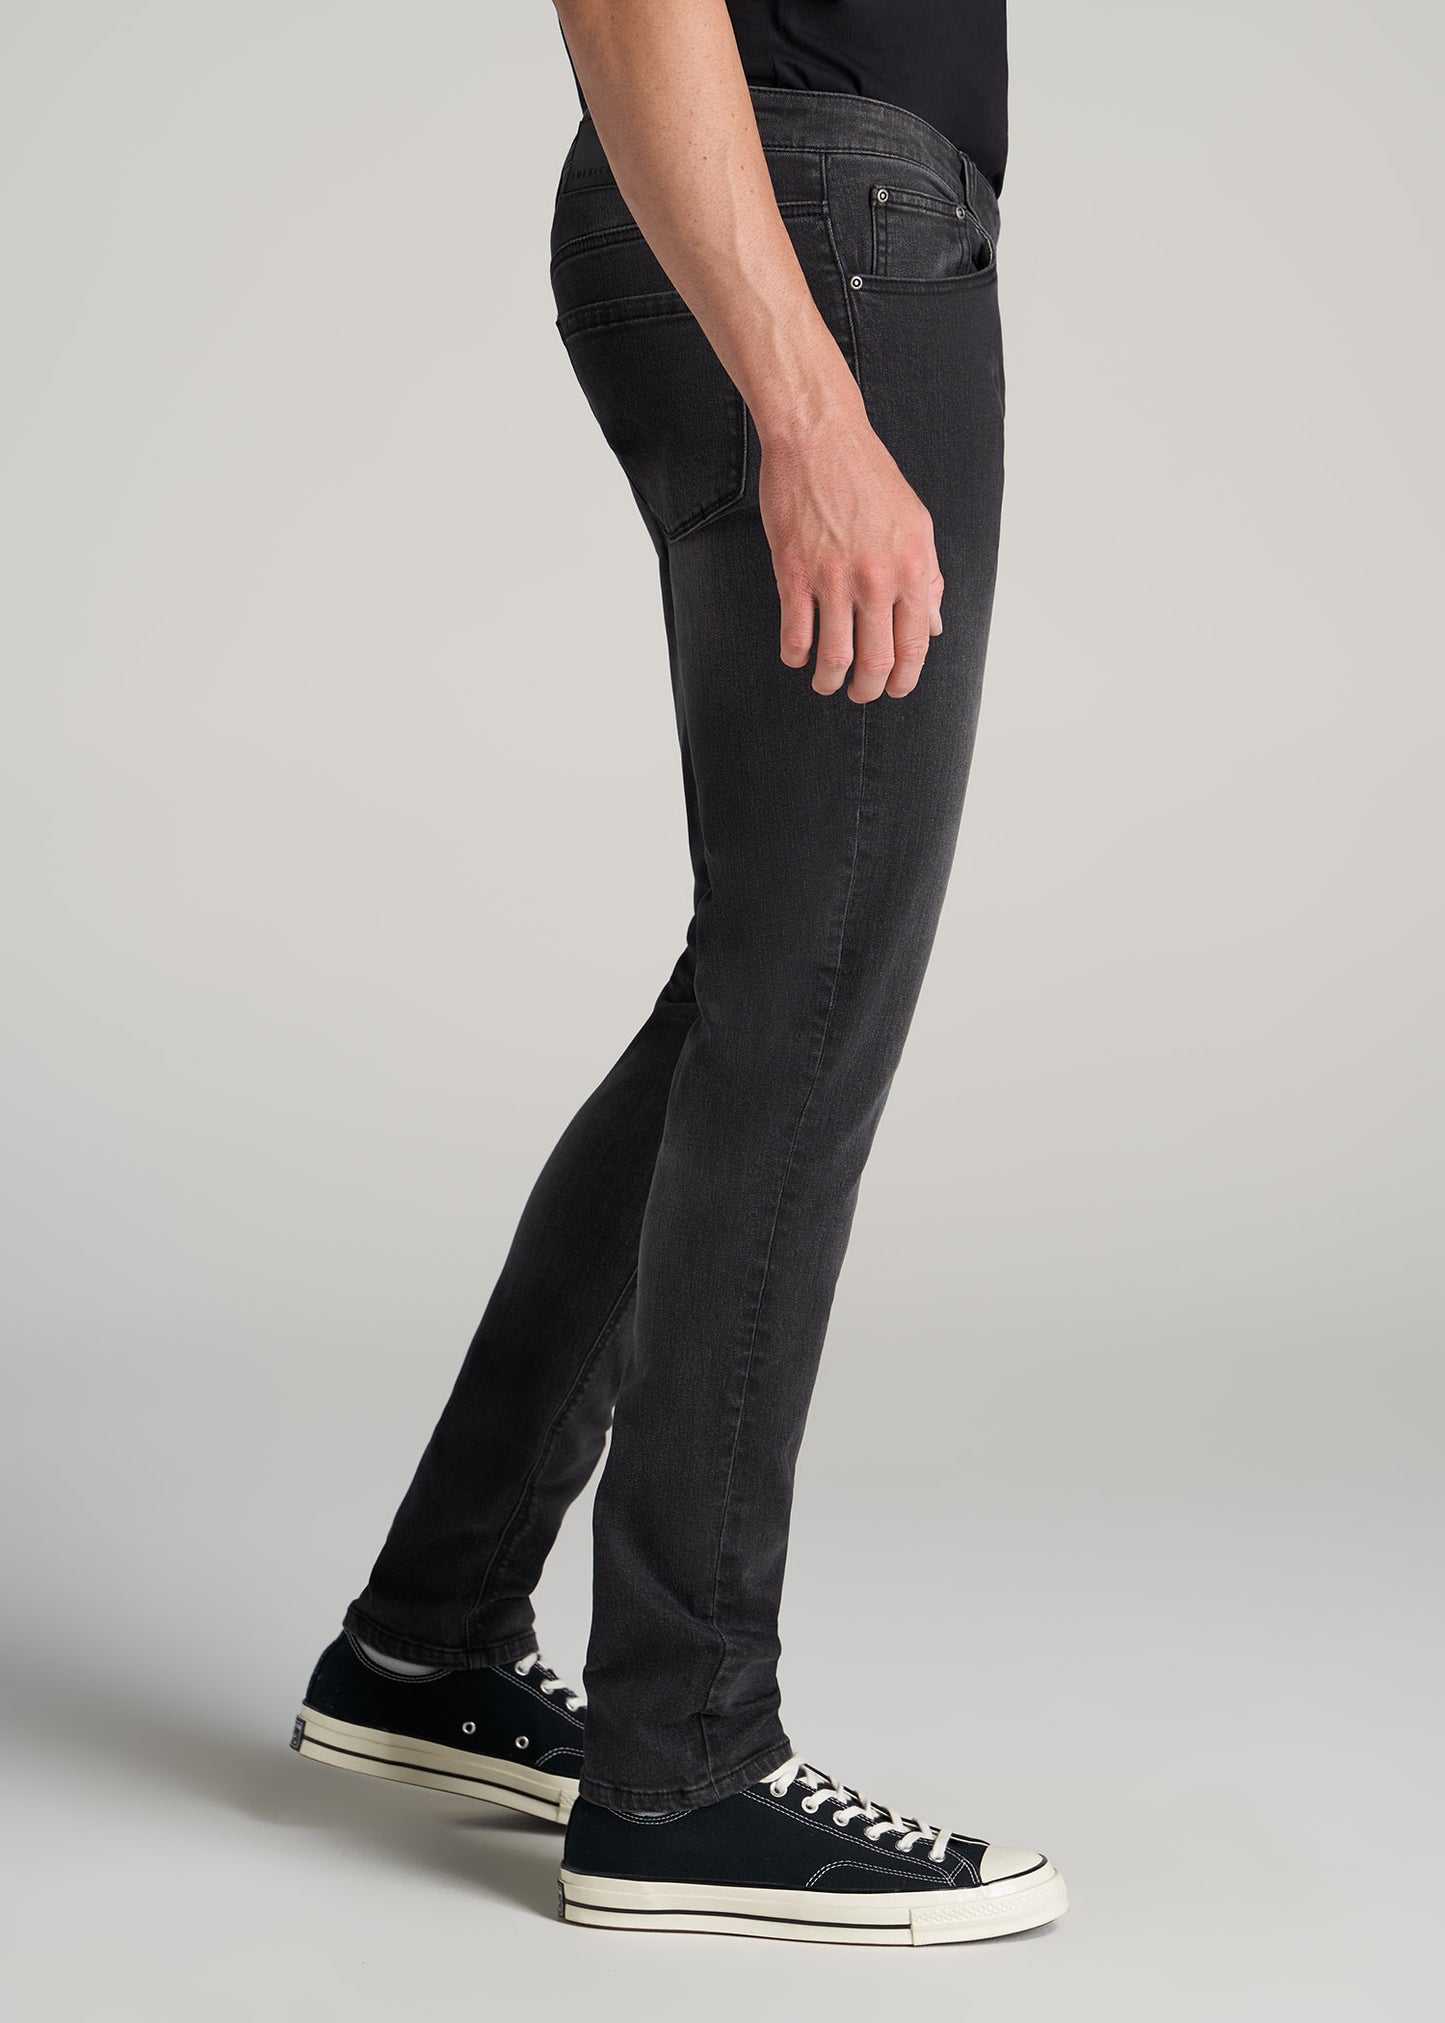 Travis SKINNY Jeans for Tall Men in Dark Smoke